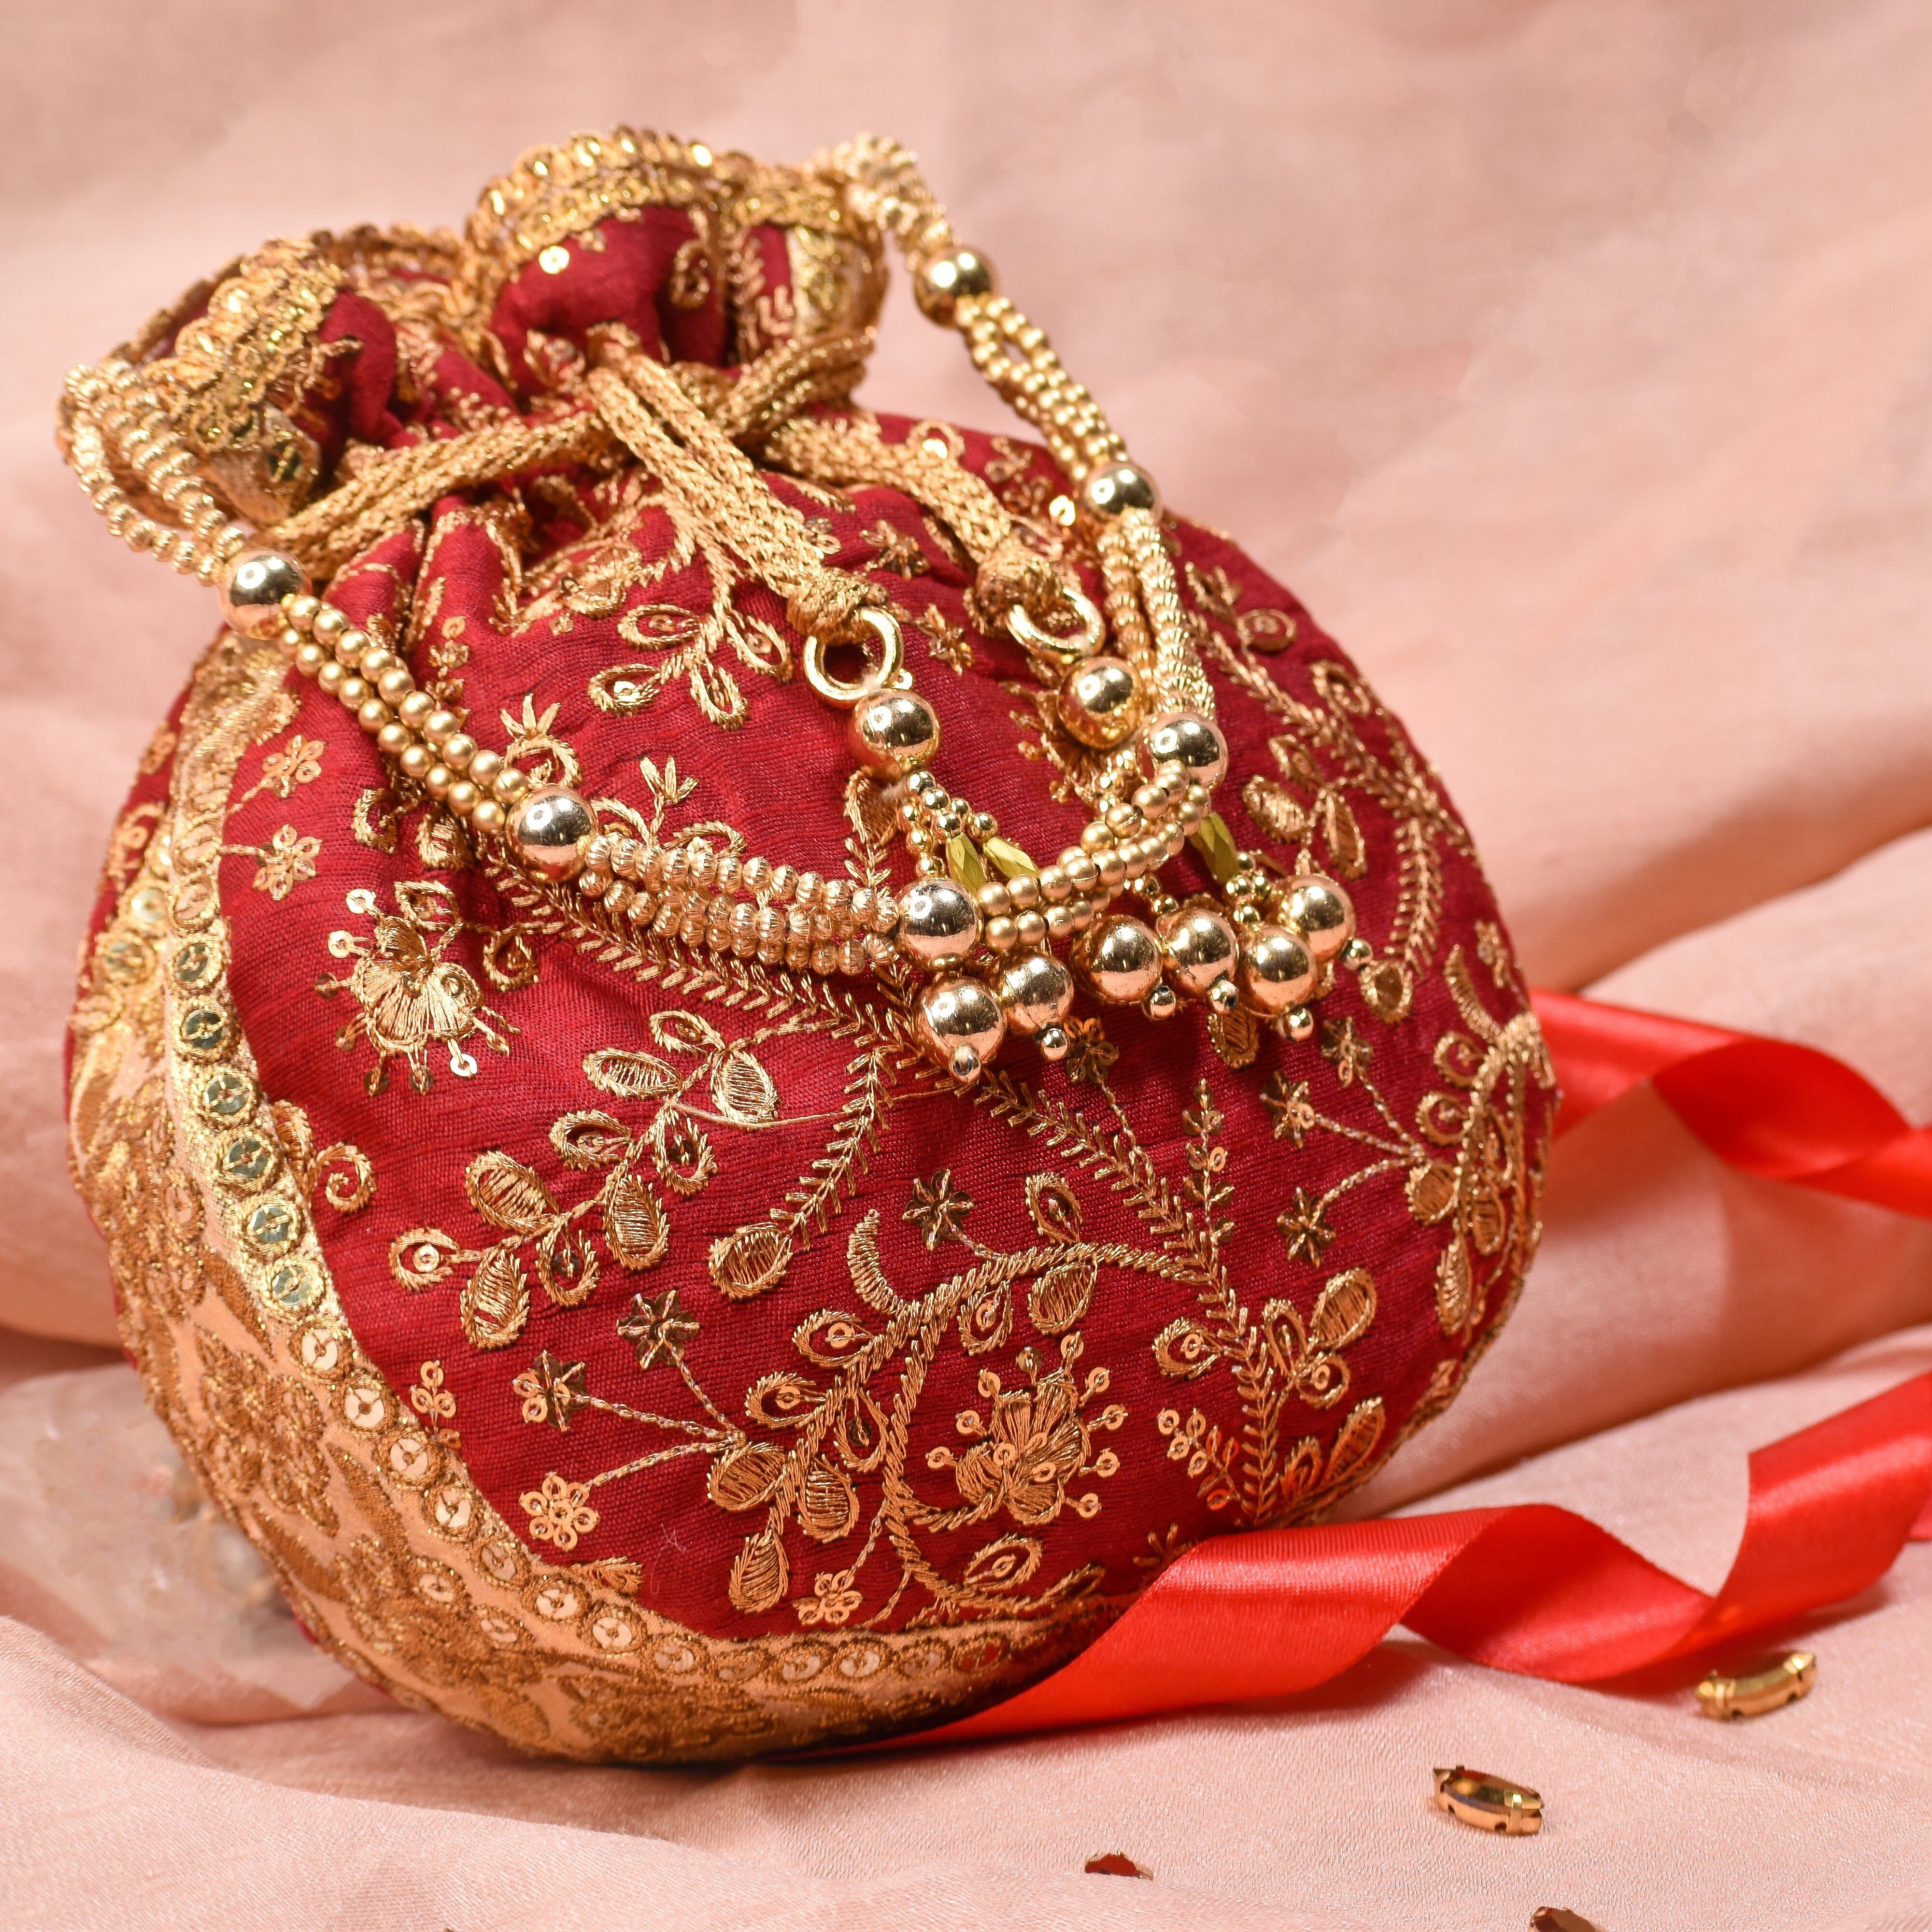 Golden Indian Wedding Purse - Free photo on Pixabay - Pixabay